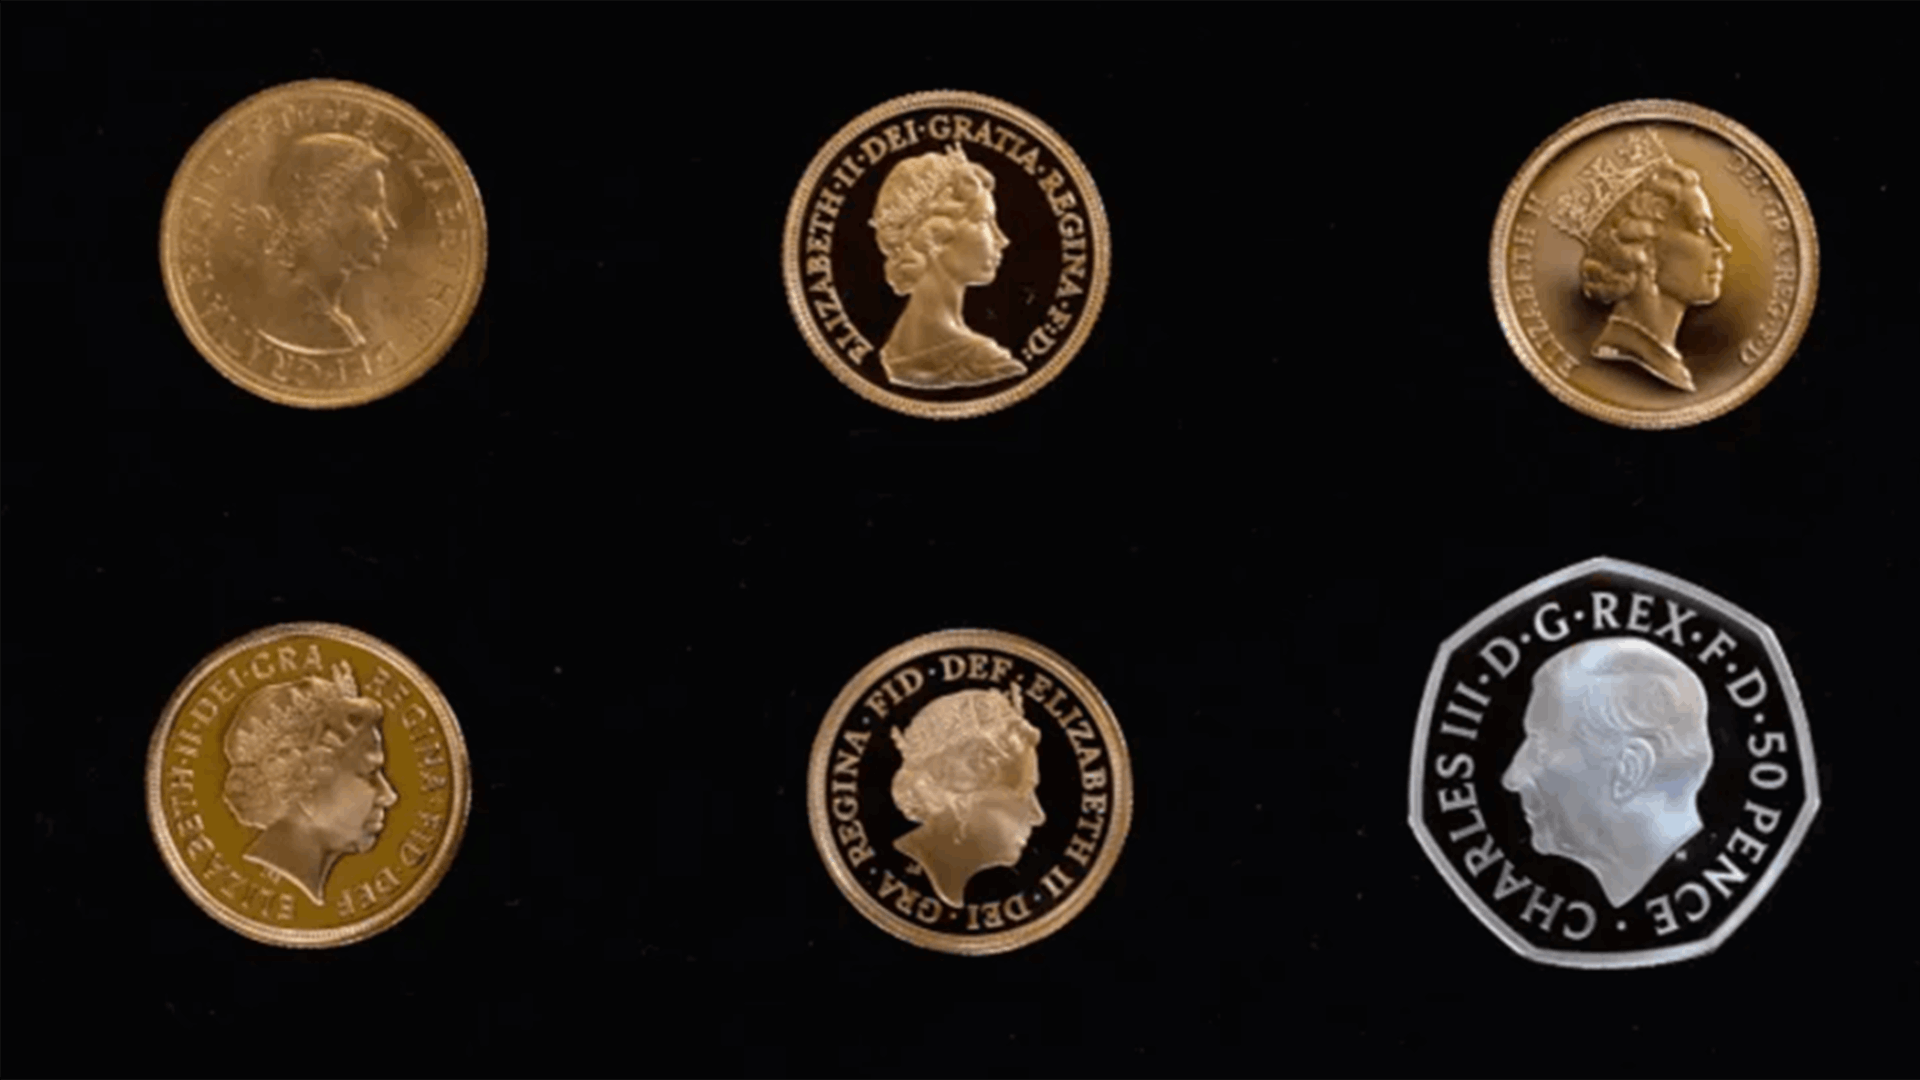 بعد توليه العرش... الكشف عن صورة الملك تشارلز الثالث على العملات المعدنية البريطانية الجديدة (صور)